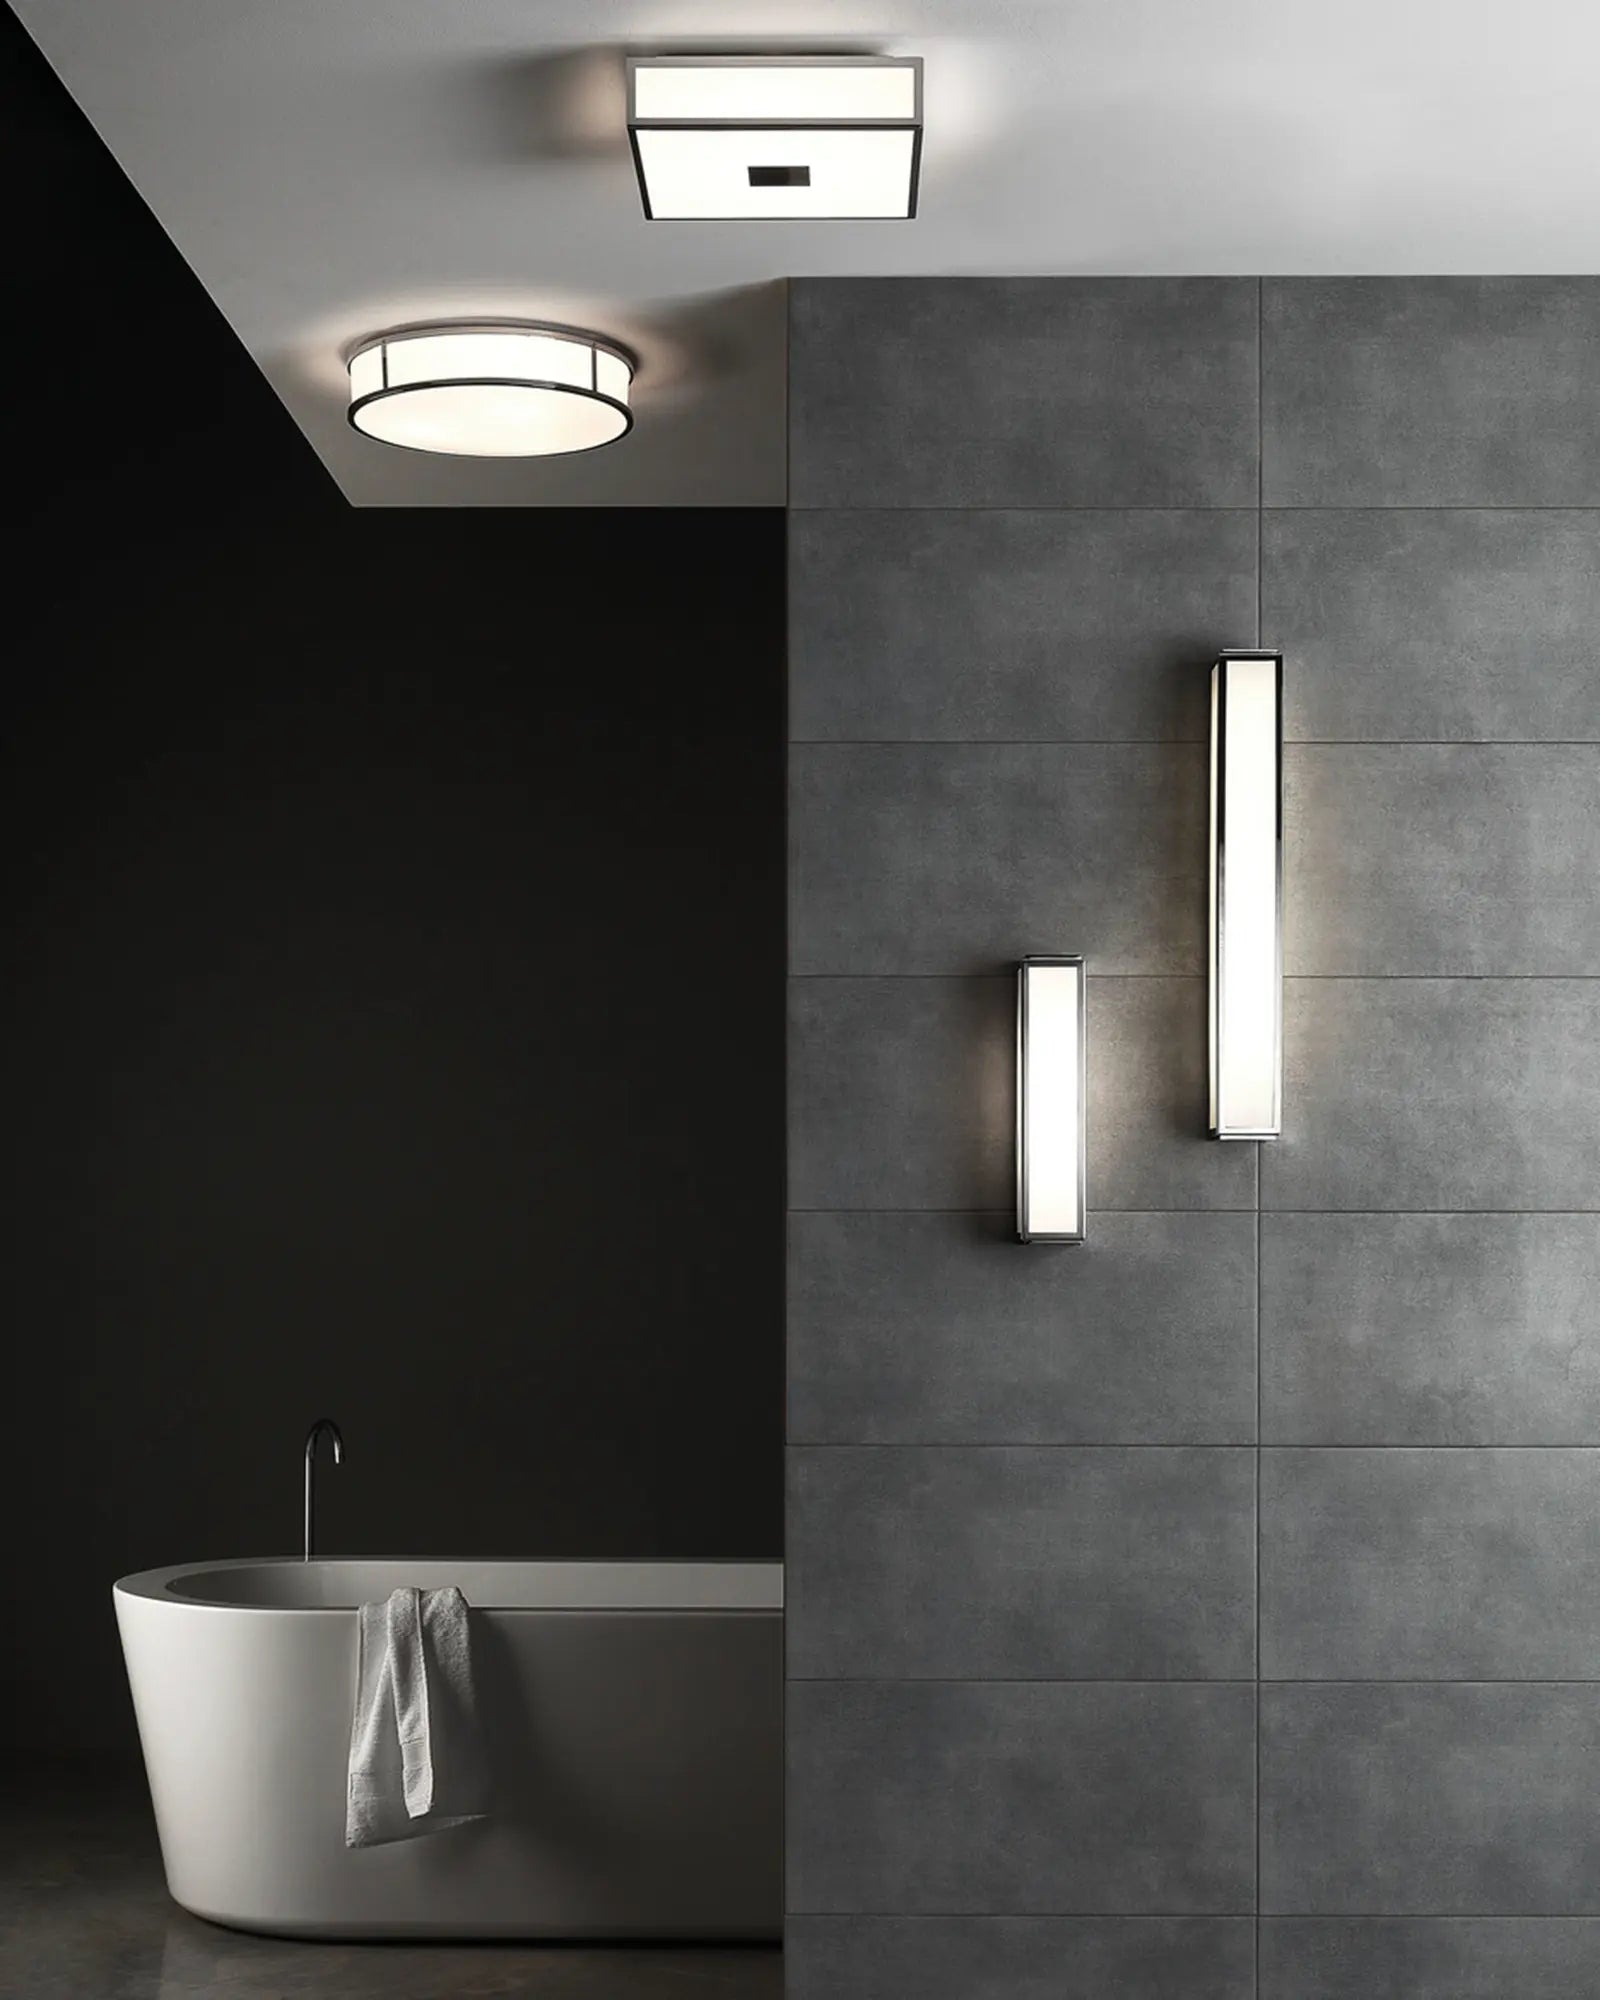 Mashiko metal and glass contemporary bathroom wall light on grey tiles